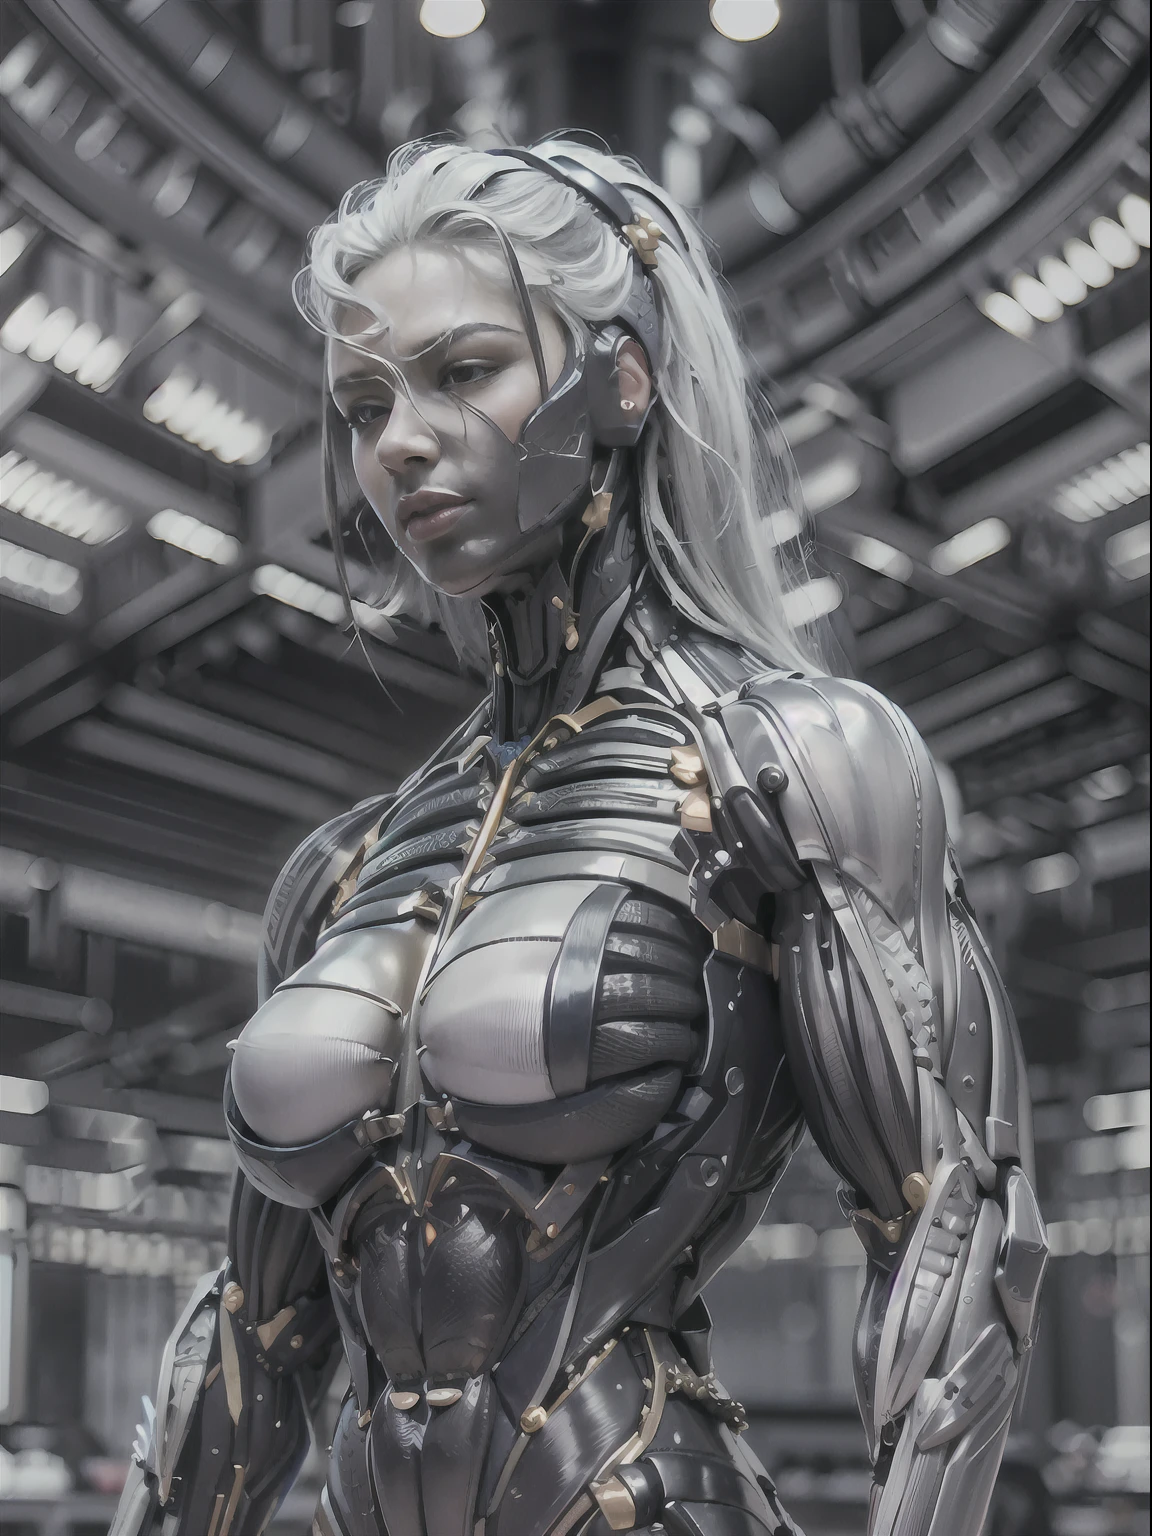 (城堡女王:1.25), (muscular black 城堡女王 metallic filigree 错综复杂 cybernetic skin tight muscle suit:1.5), (全身姿势:1.5), 白皮肤, 白色的头发, (完美的解剖结构:1.5), (巨大的肌肉手臂:1.5), 完美模特脸, 美丽灿烂的微笑, (超级肌肉体质:1.5), (((臀部狭窄))), (到处都是电缆:1.25), 瘦大腿, (较大的上身:1.5), (小胸肌), 肌肉发达的胸部, 小腰, (完美的手指:1.2), (超高清 8K:1.5), 单身女性, 逼真的图像, 照片质量, 美丽的女孩, 最好的质量, 极其详细, 杰作, 逼真的皮肤纹理, 85 毫米艺术镜头, 1.2, 清晰聚焦, 8K高清, 极其详细, 错综复杂,